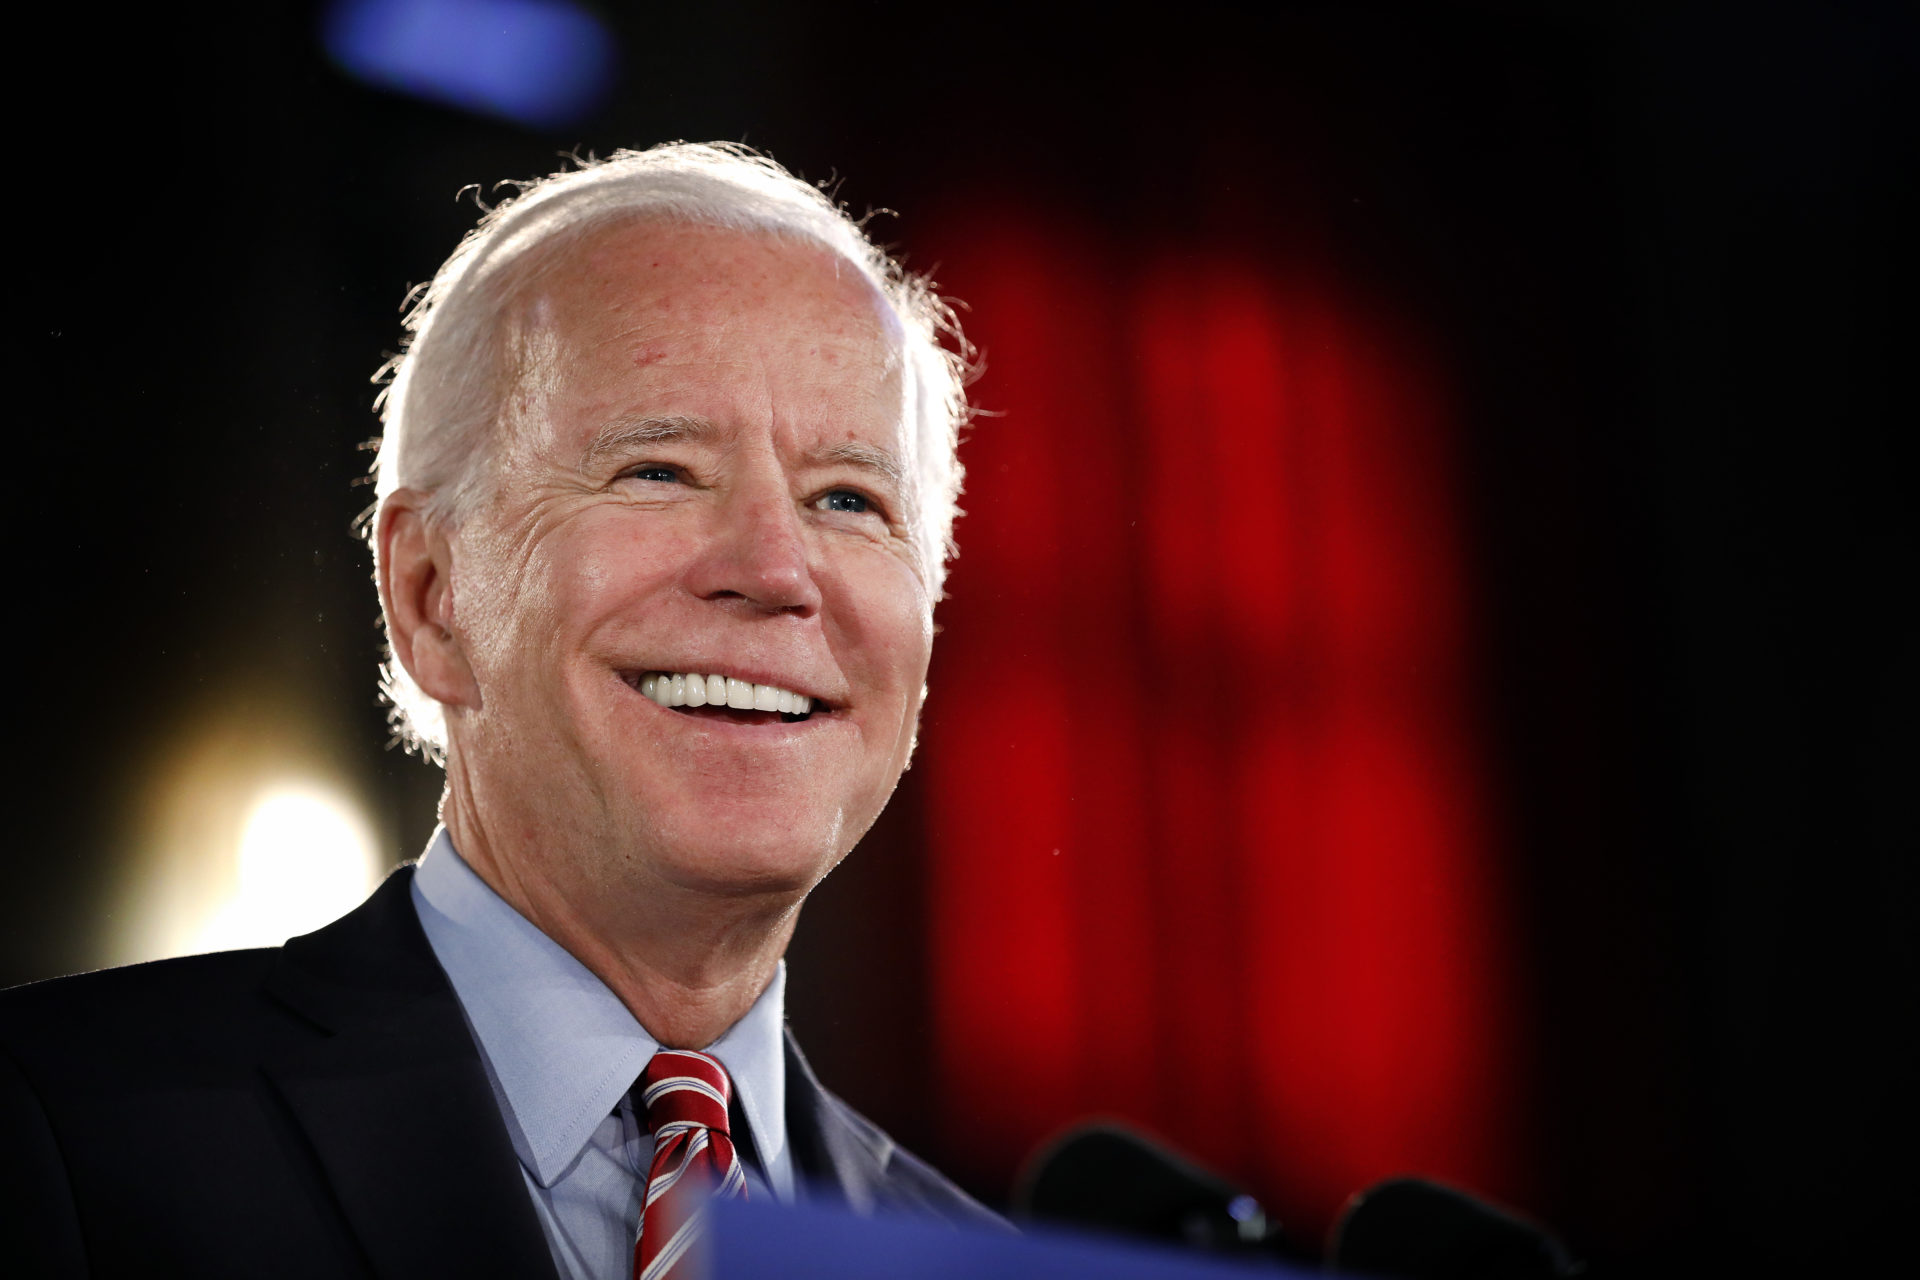 El candidato presidencial Joe Biden pronuncia un discurso sobre política económica en Scranton, Pennsylvania